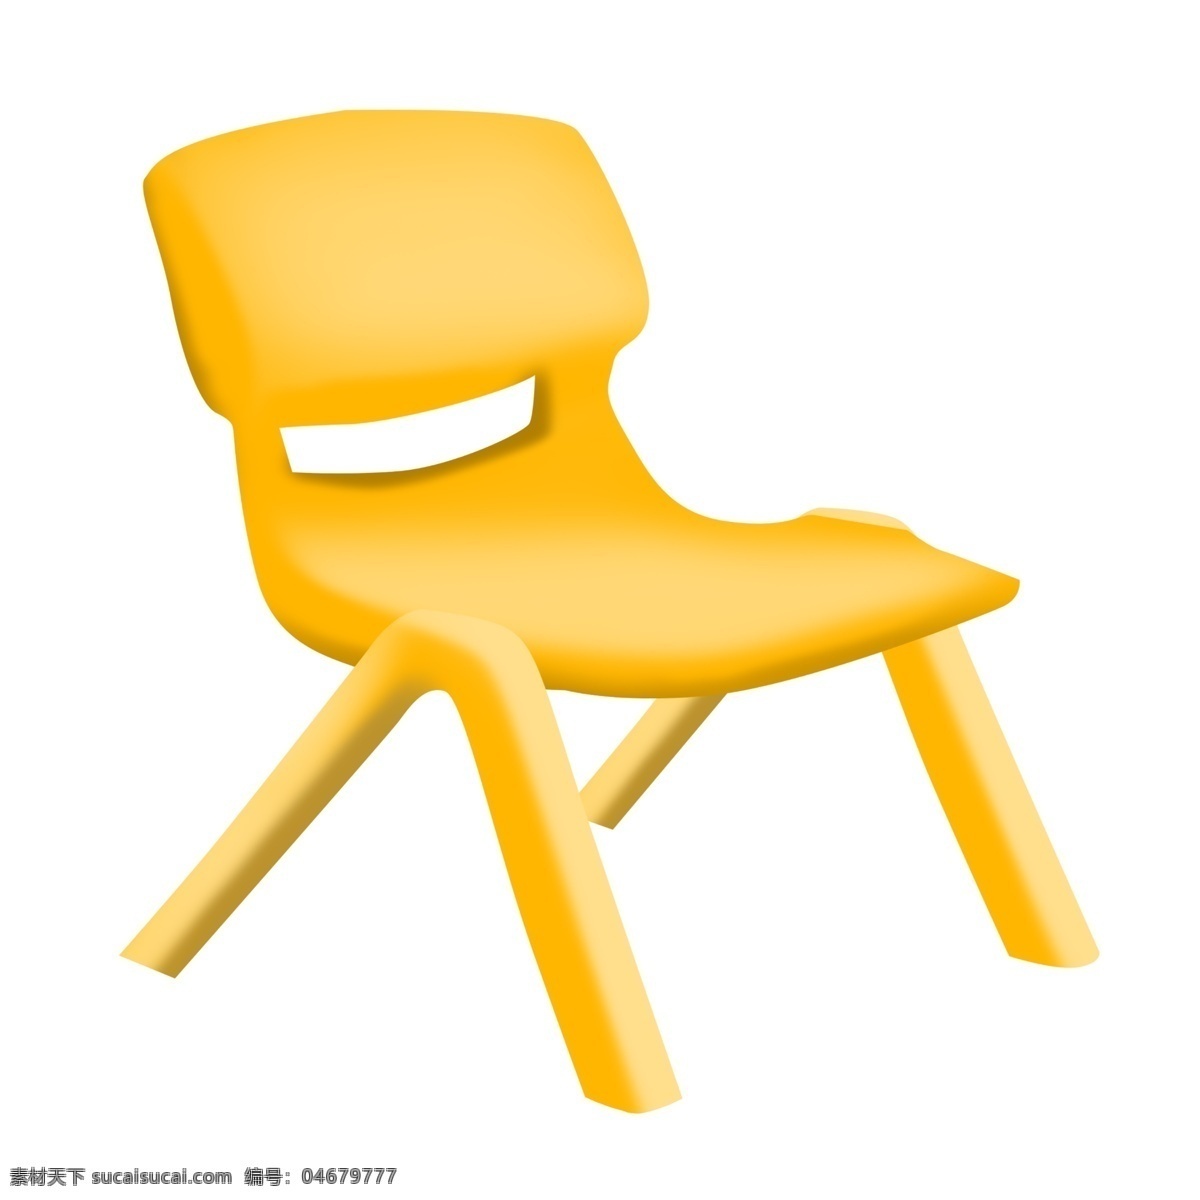 黄色 椅子 装饰 插画 黄色的椅子 家具椅子 漂亮的椅子 创意椅子 立体椅子 儿童椅子